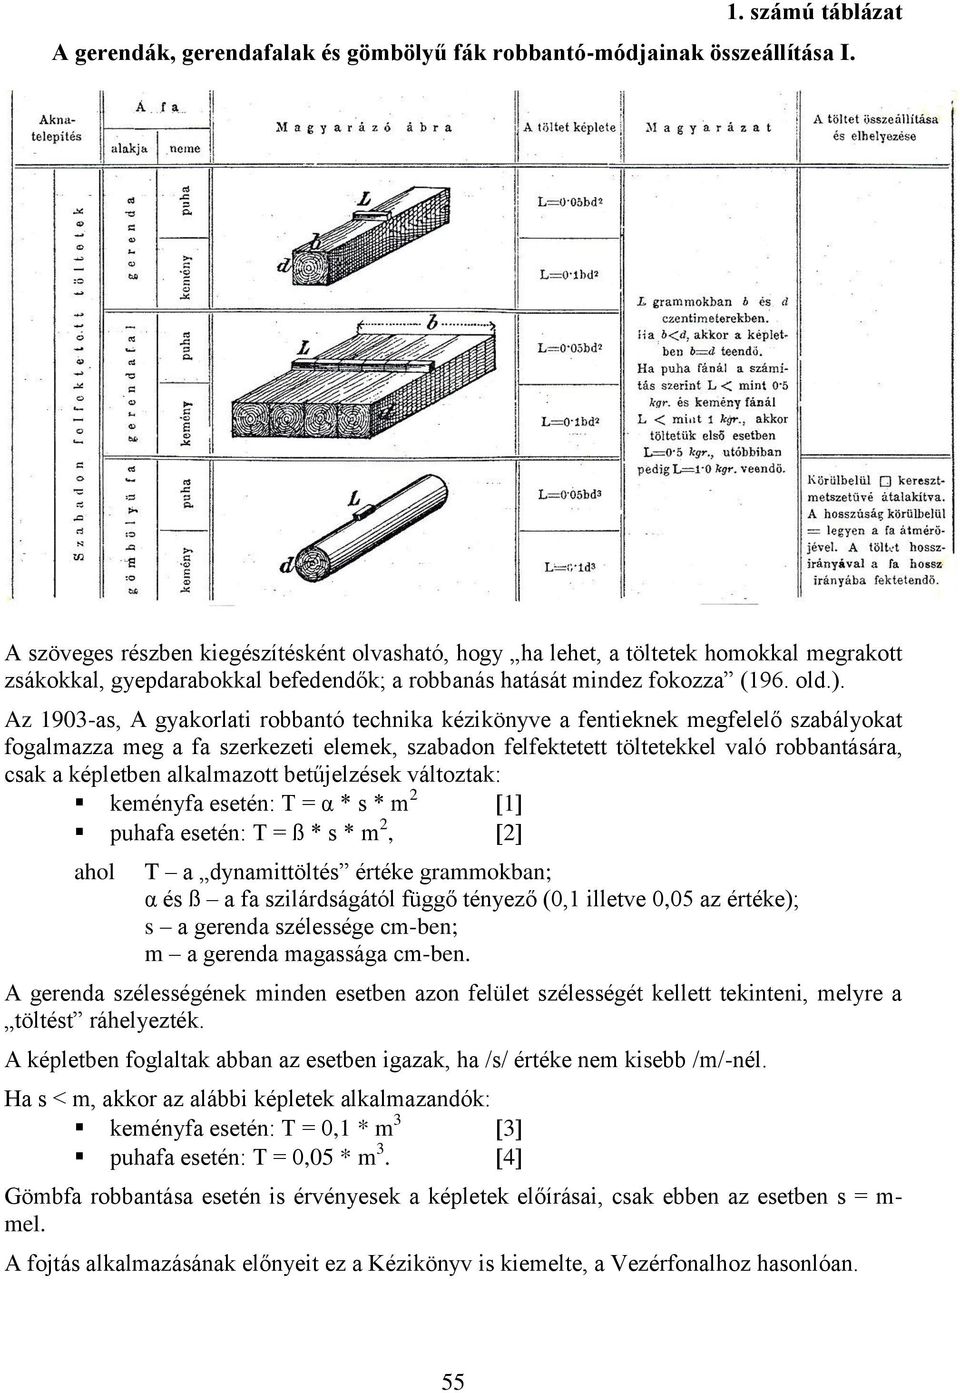 Az 1903-as, A gyakorlati robbantó technika kézikönyve a fentieknek megfelelő szabályokat fogalmazza meg a fa szerkezeti elemek, szabadon felfektetett töltetekkel való robbantására, csak a képletben